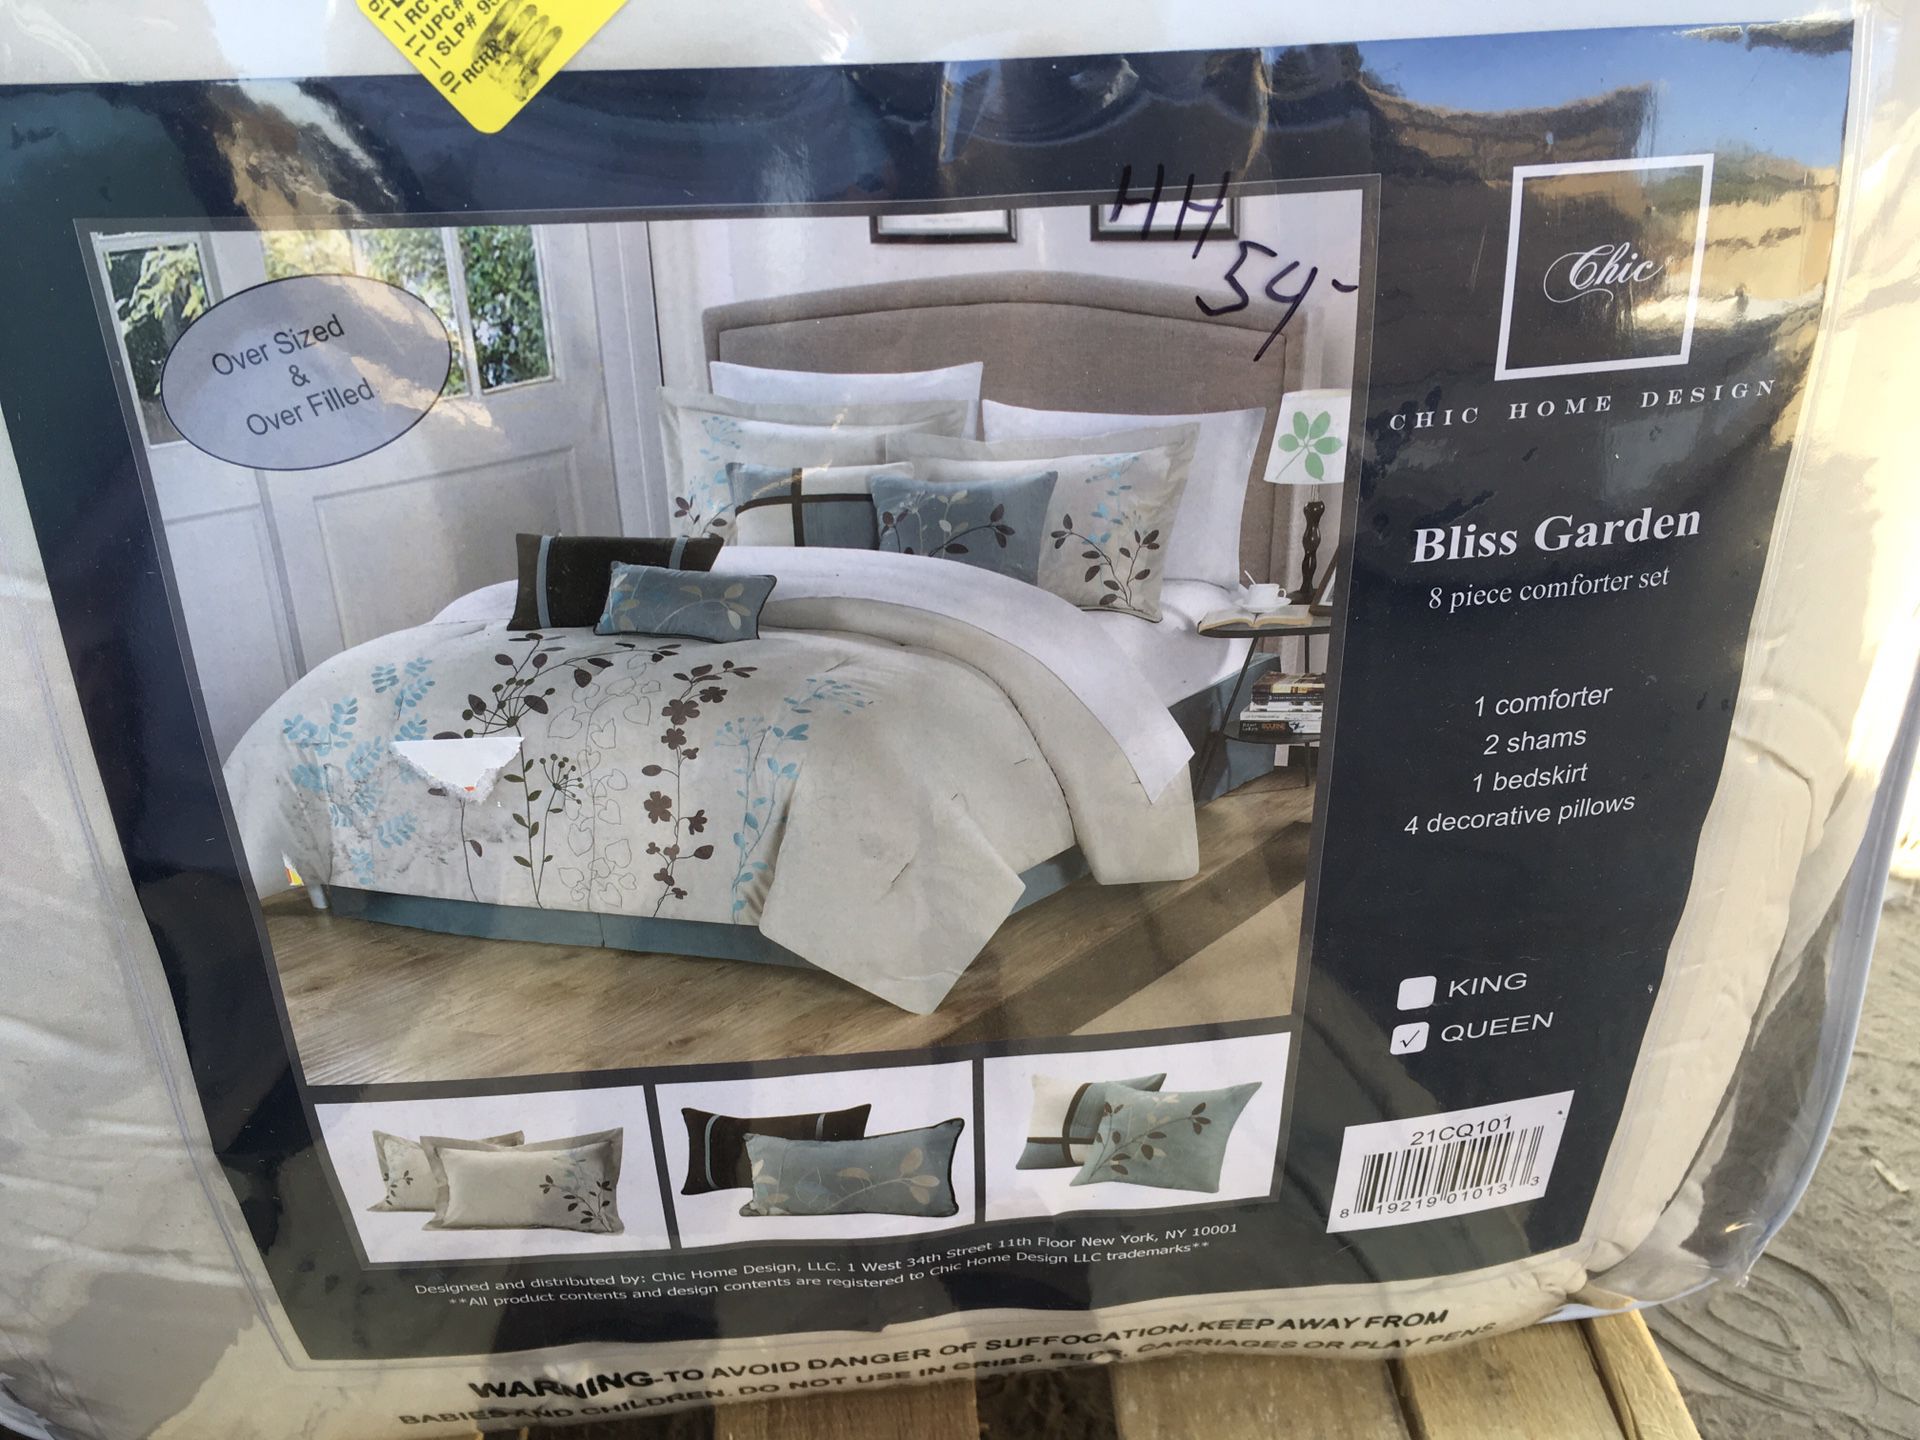 Chic home design bliss garden comforter set